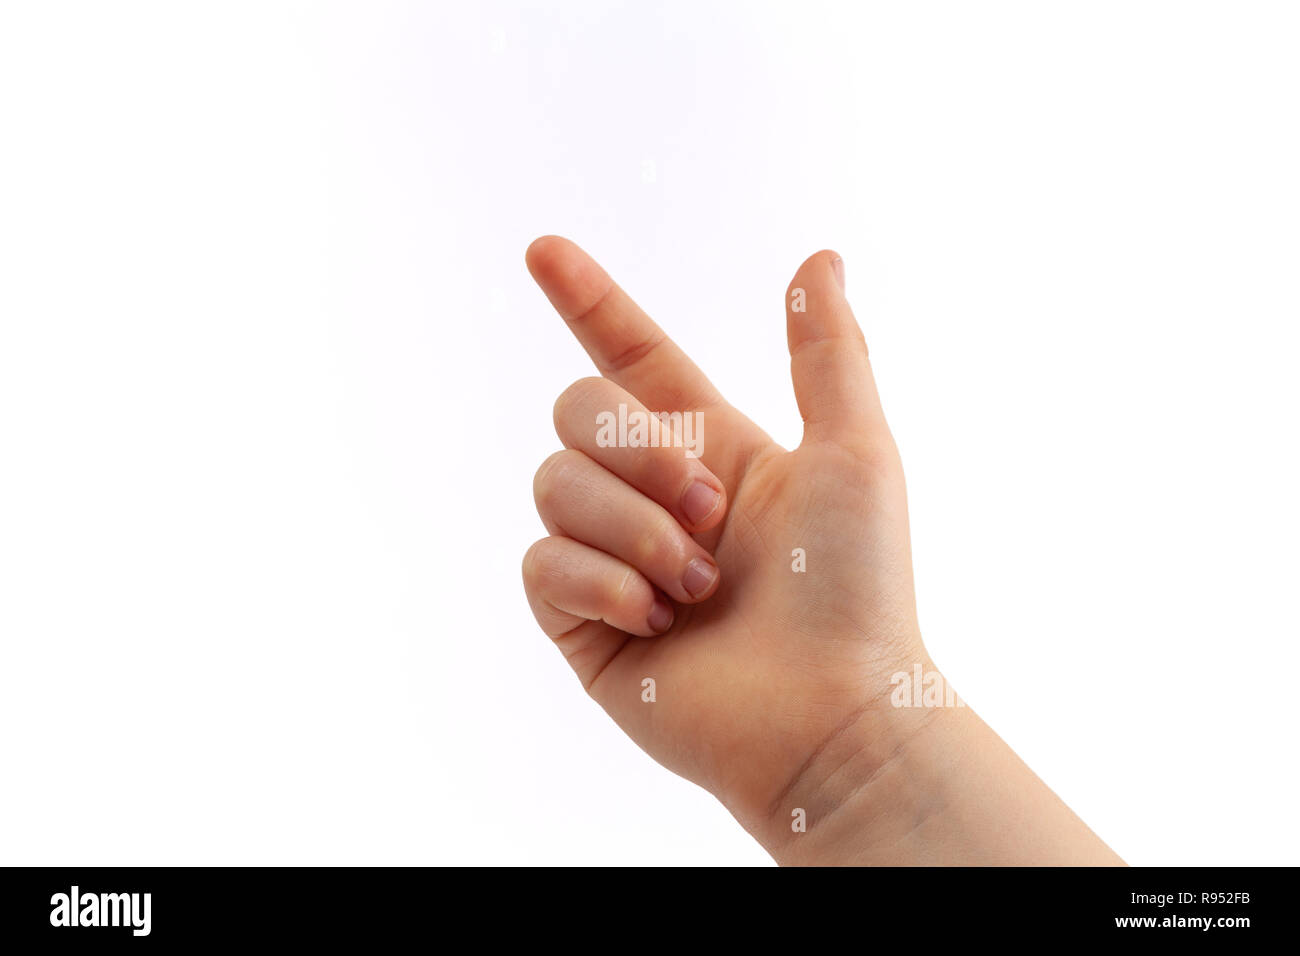 La main droite de l'écran en appuyant sur isolated on white Banque D'Images